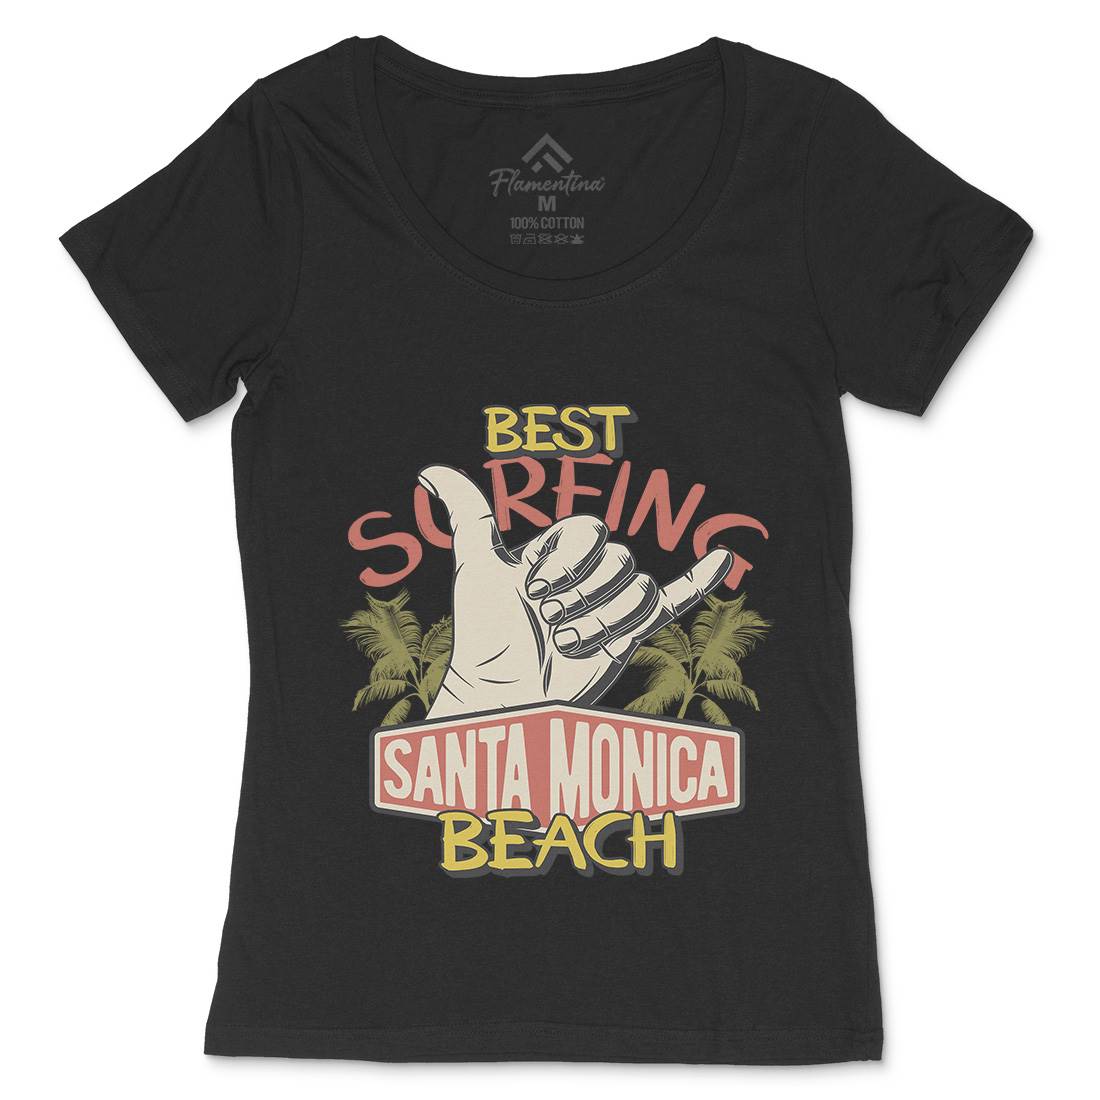 Best Surfing Beach Womens Scoop Neck T-Shirt Surf D909